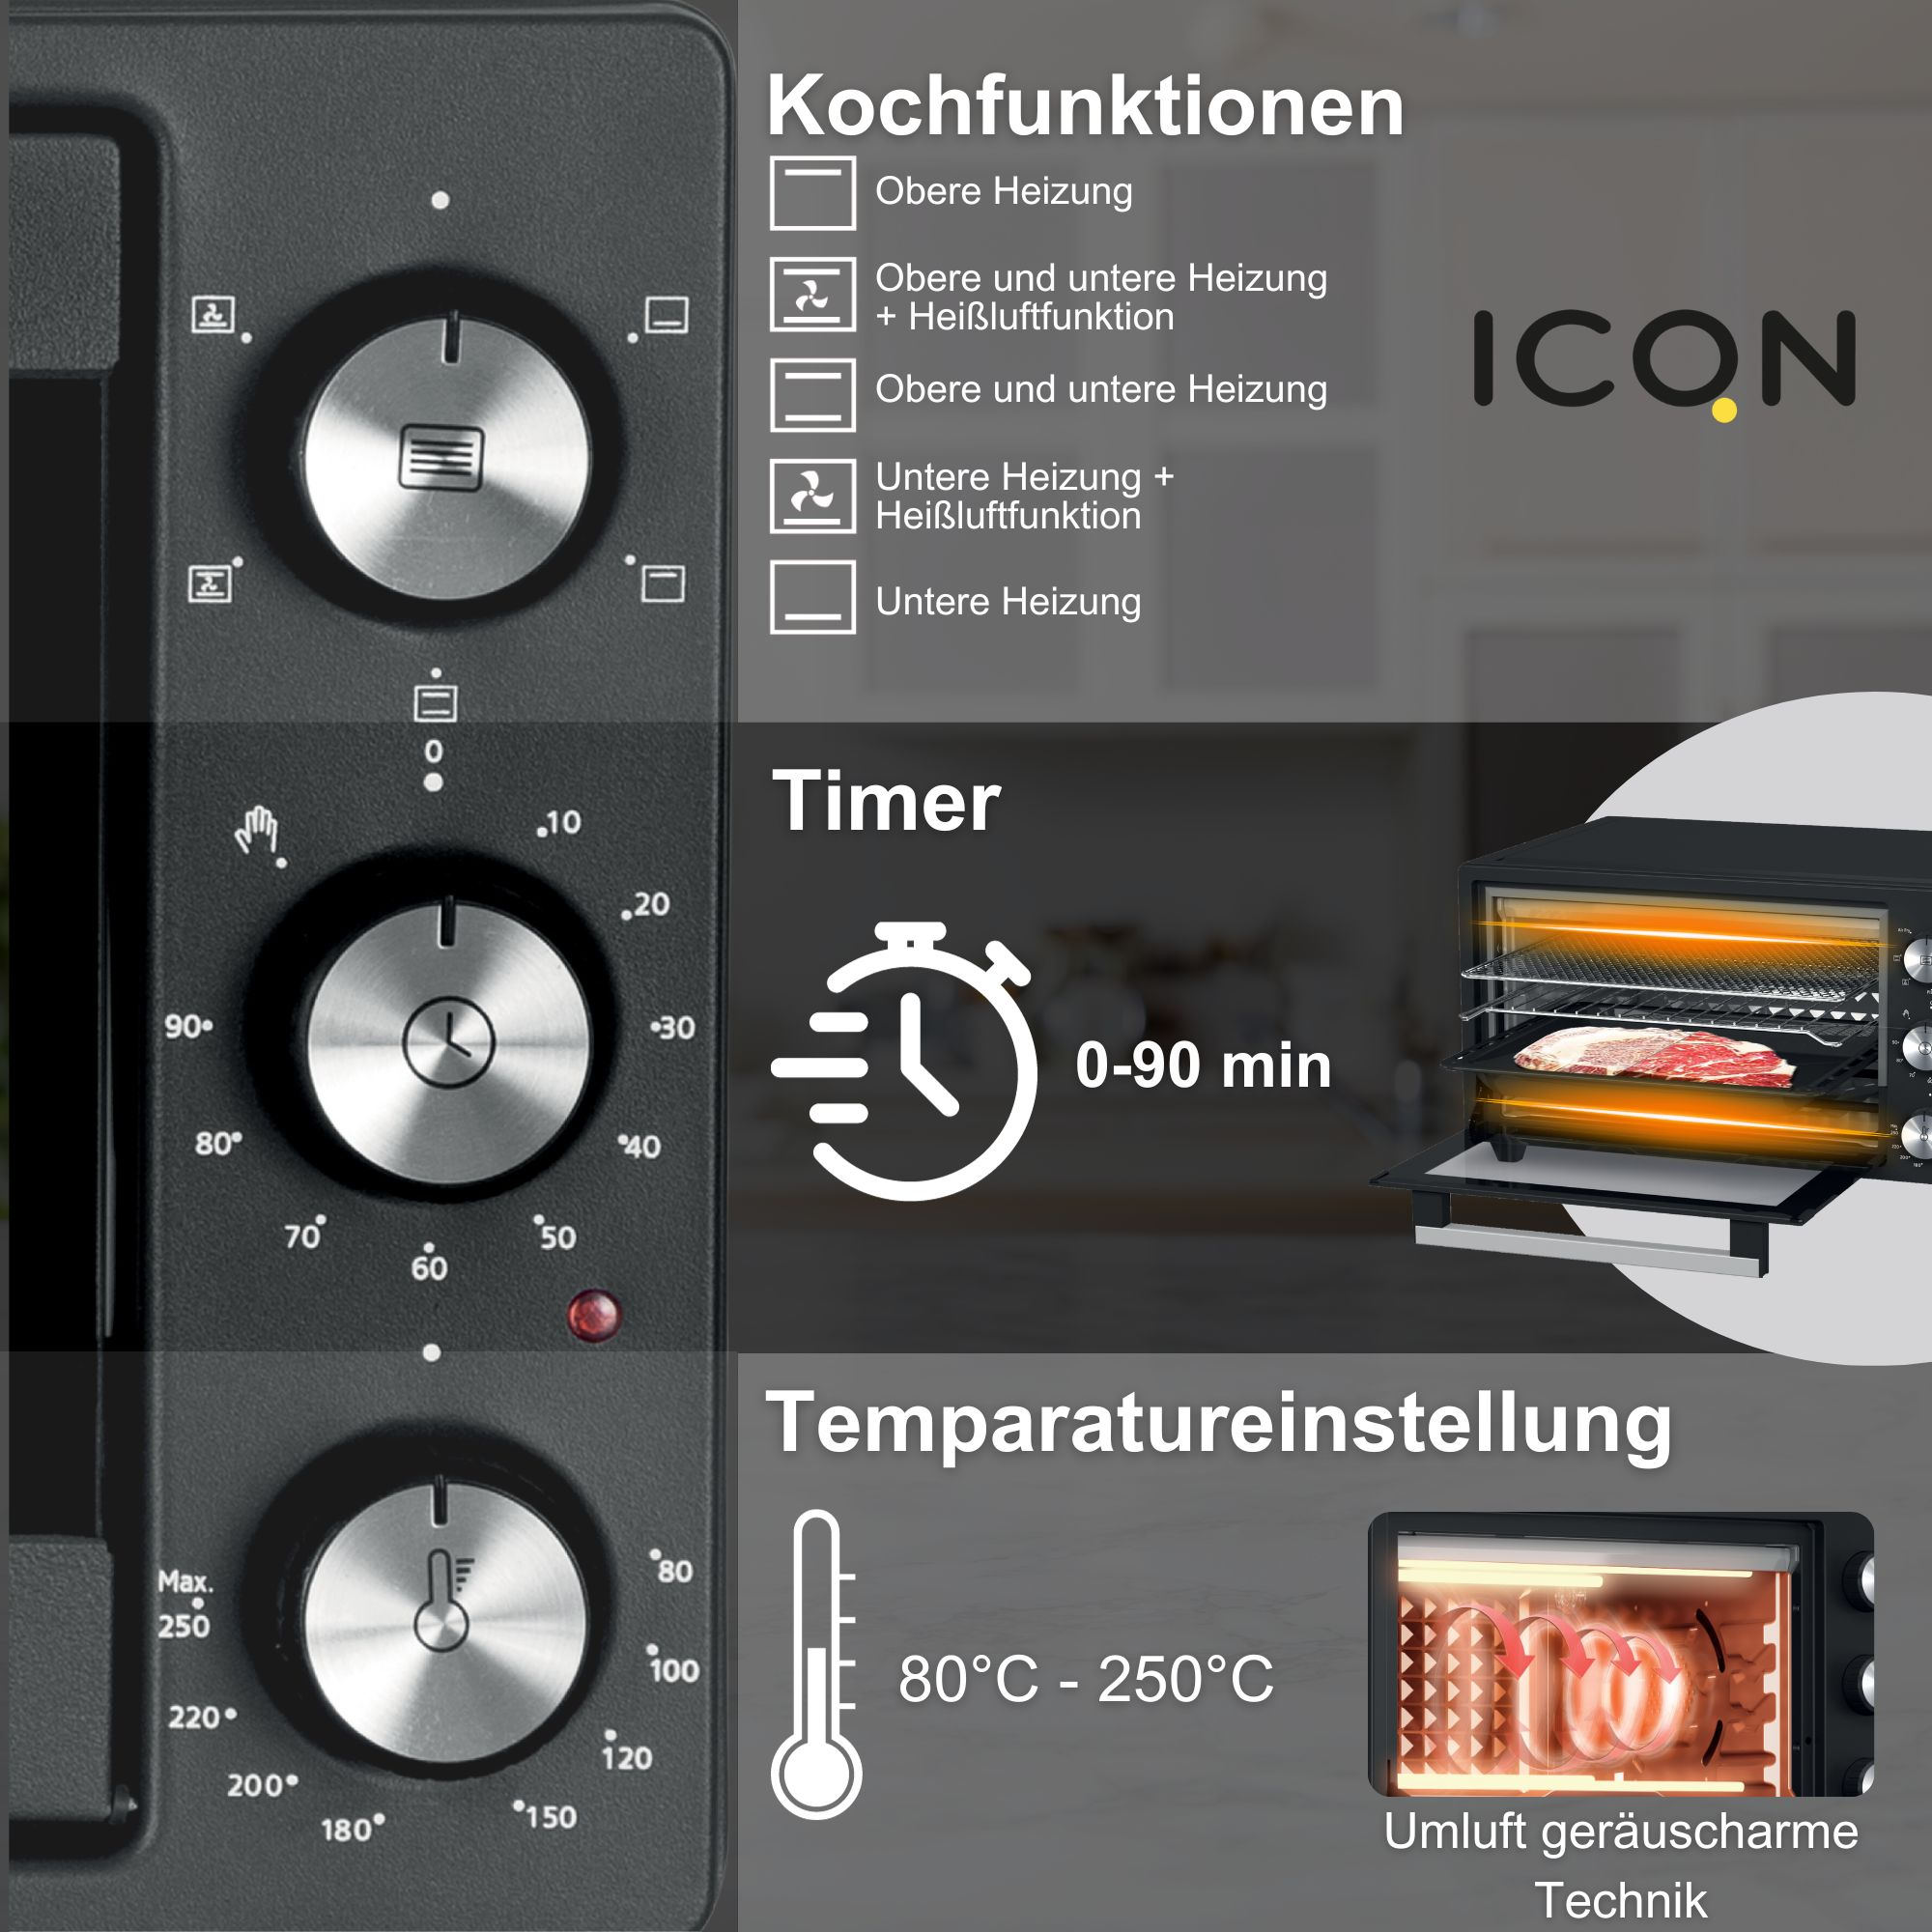 ICQN 20 L, 5 1500 Grill-Funktion, W, Min. 80°-250°C, Minibackofen 90 Timer